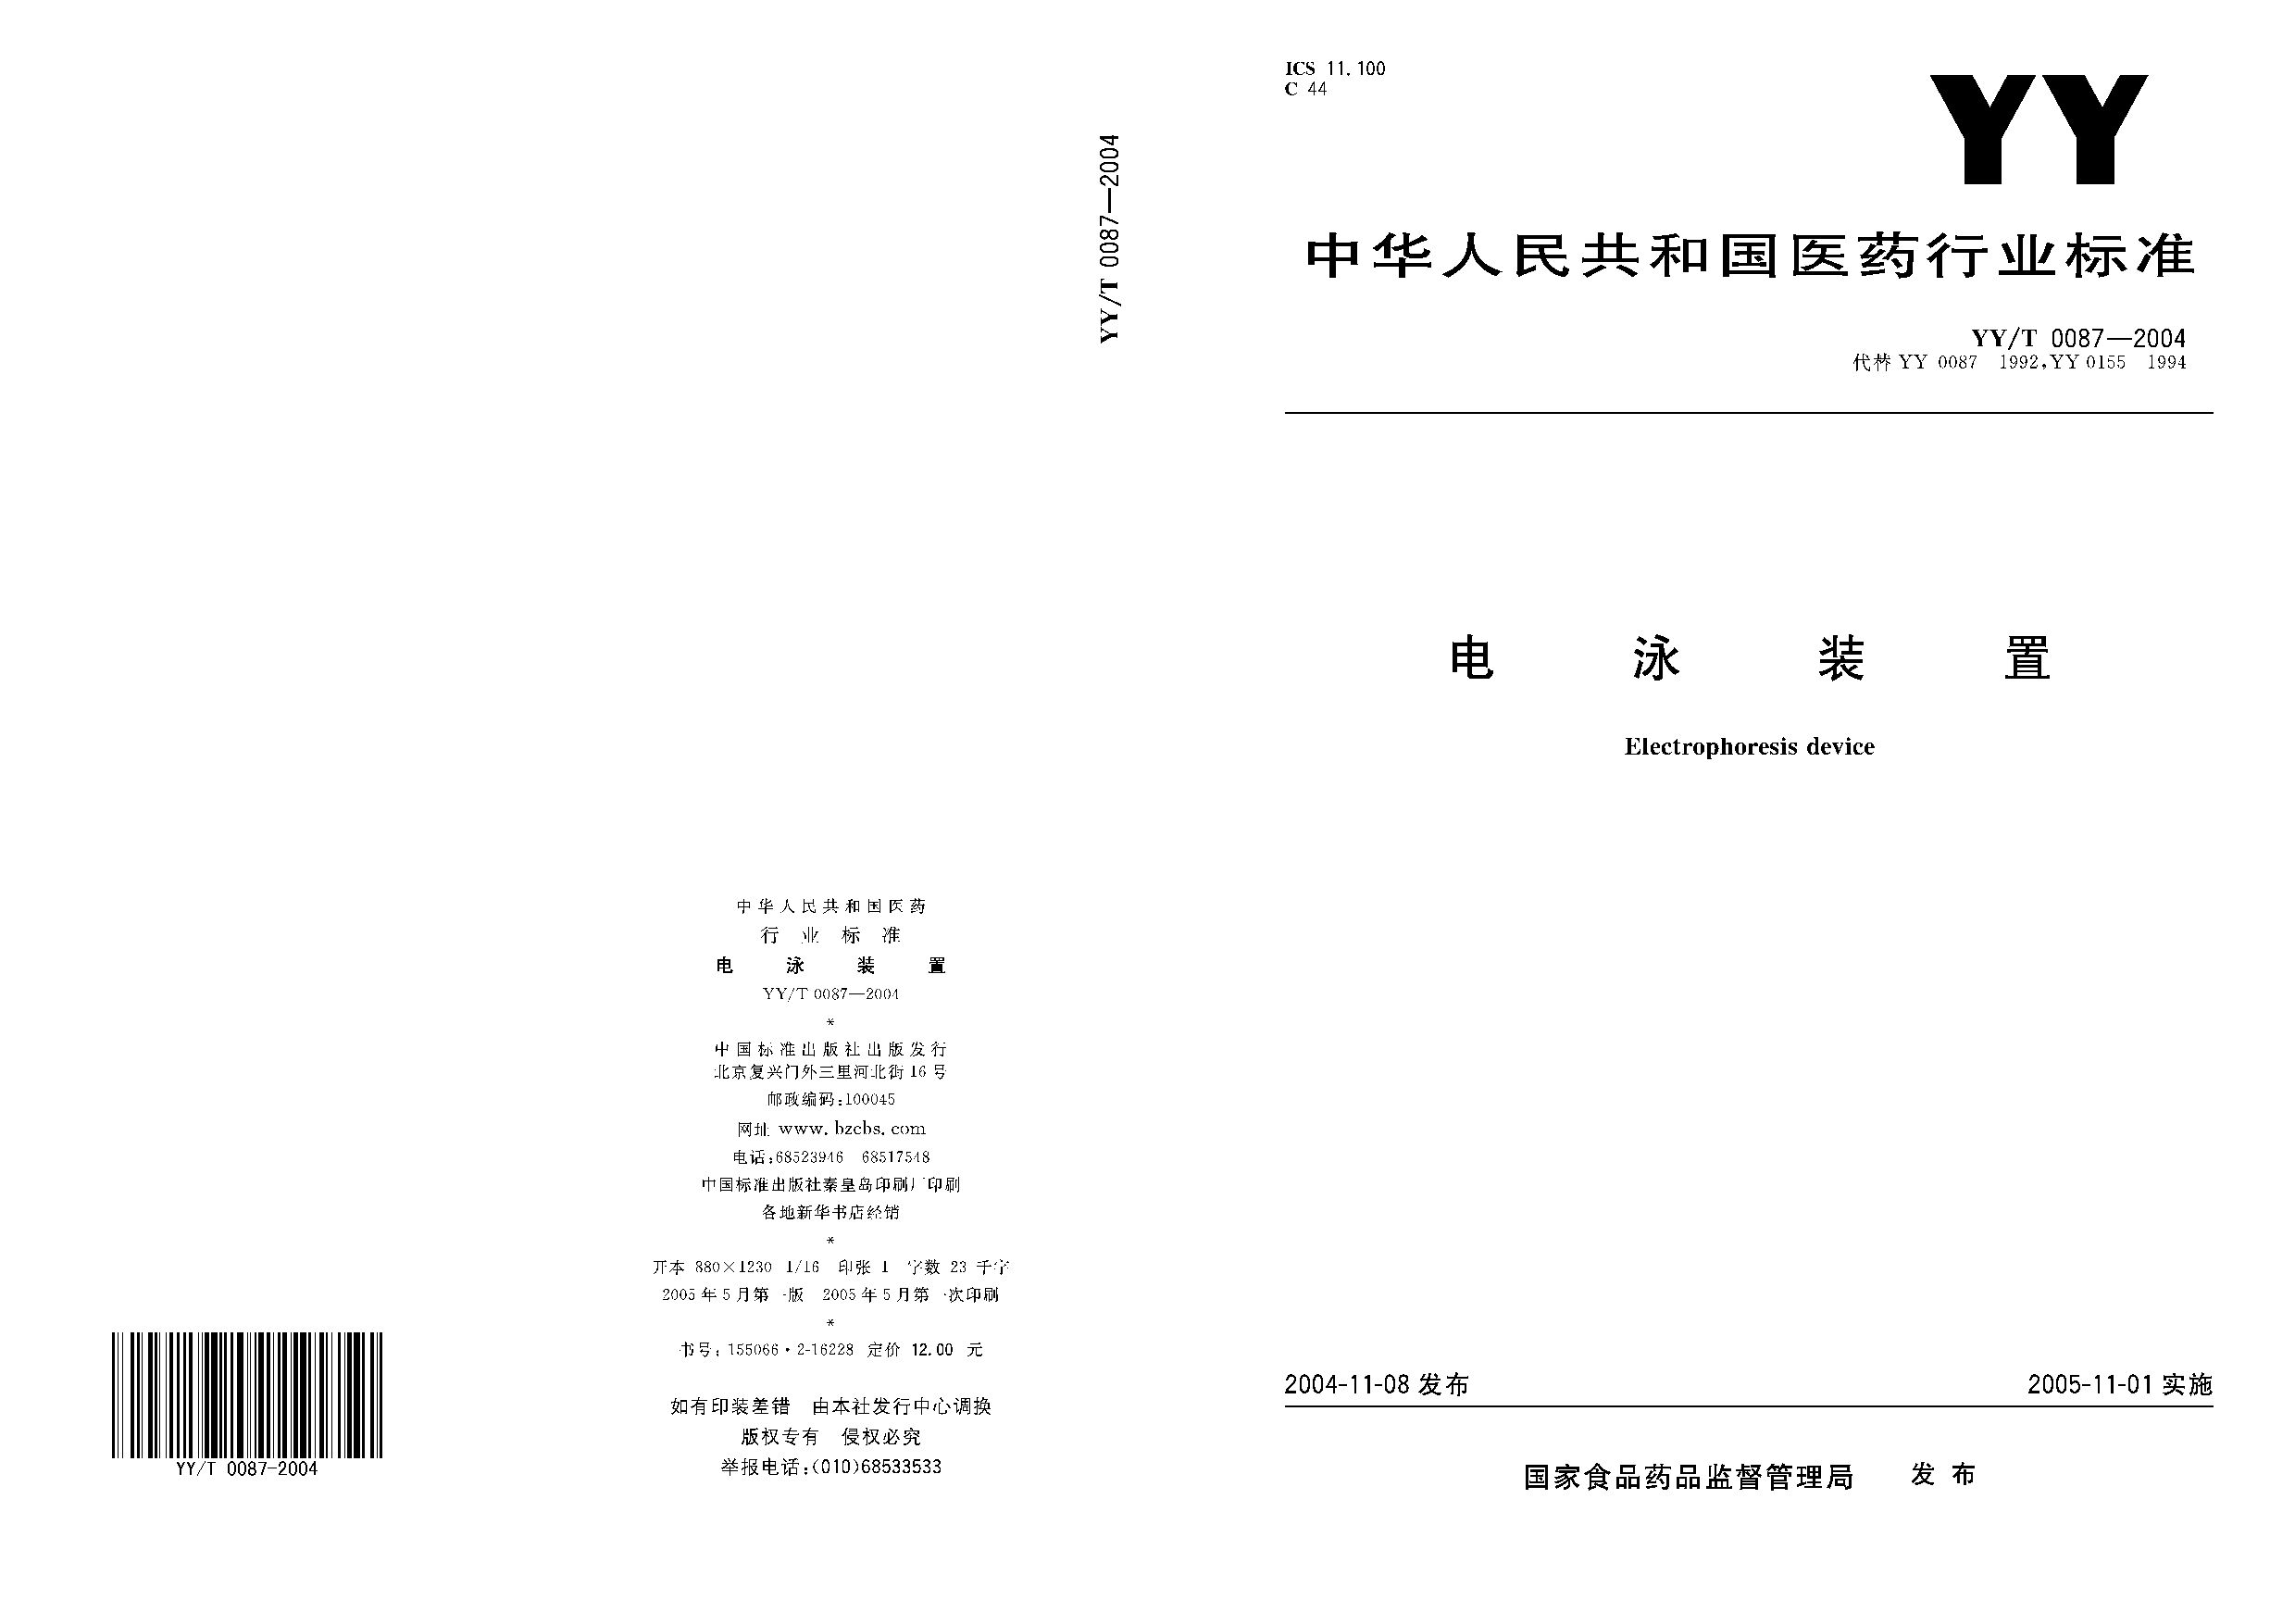 YY/T 0087-2004封面图